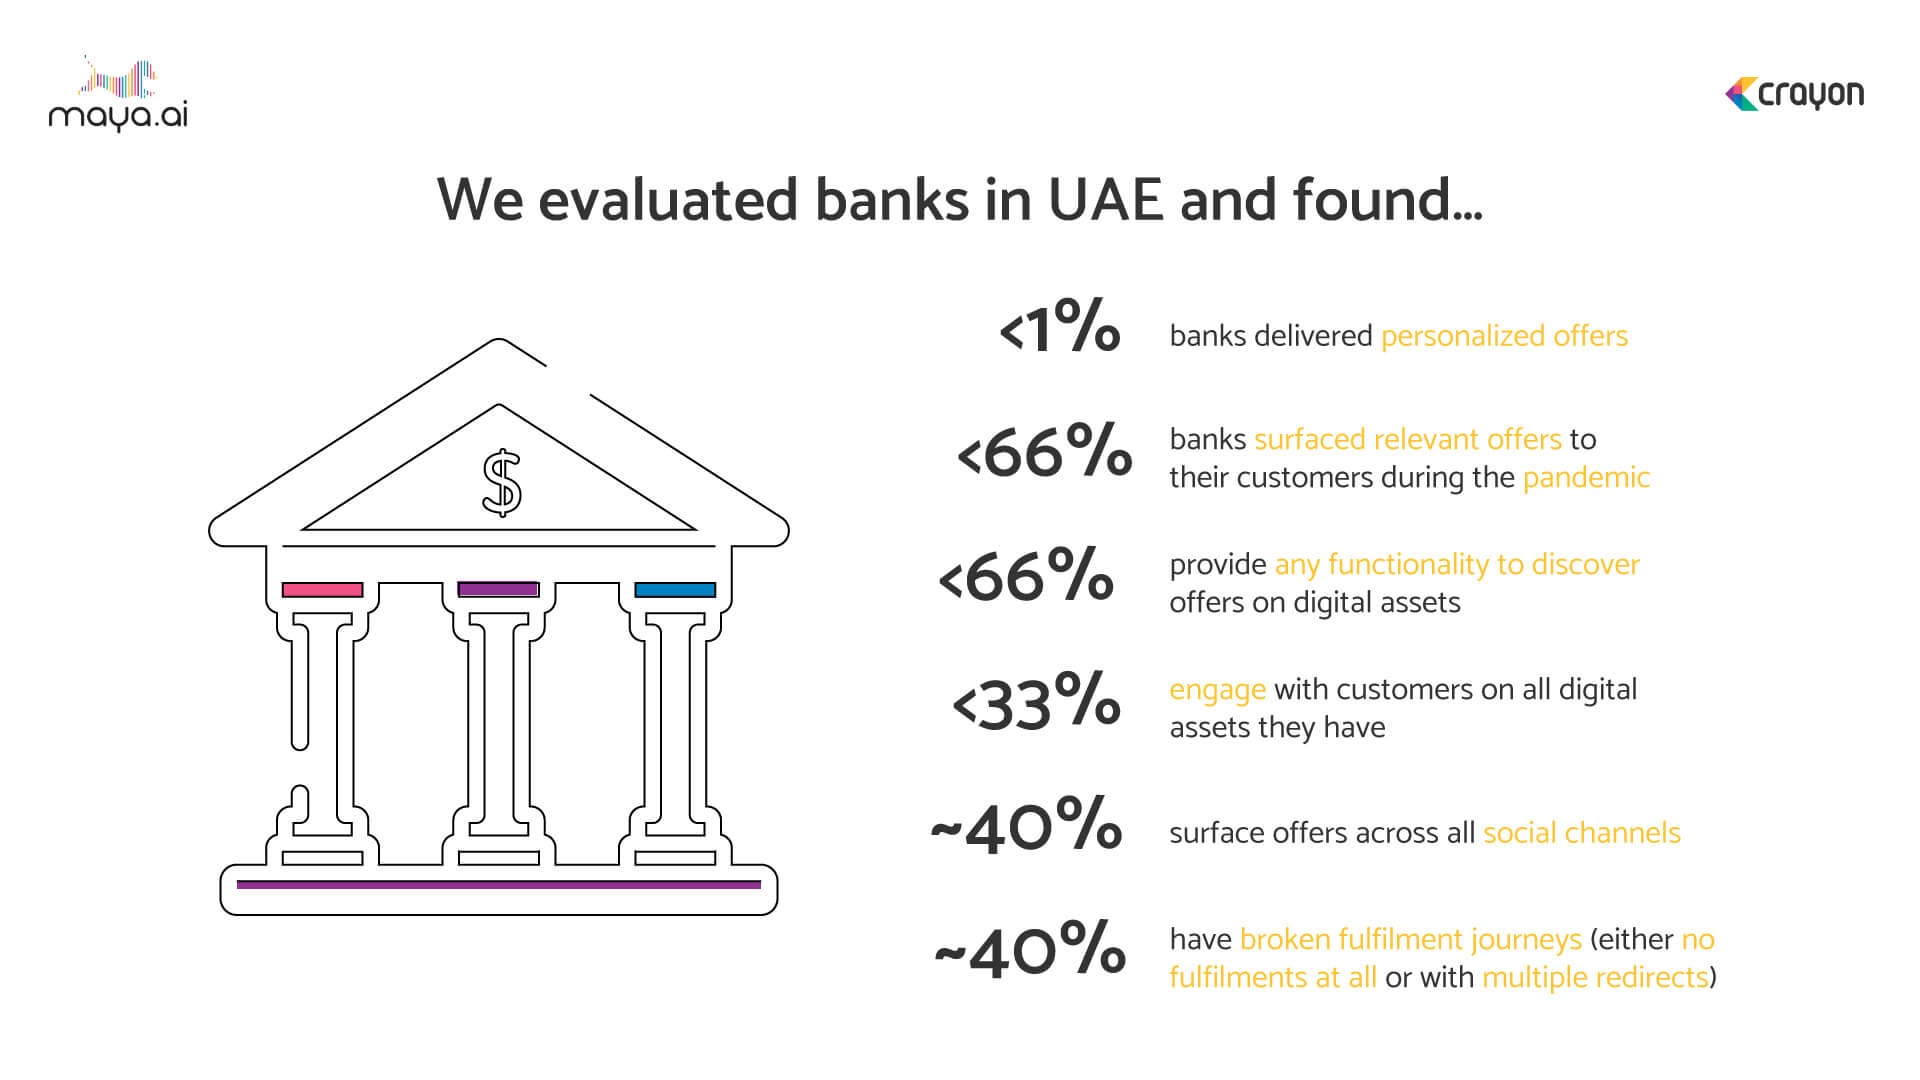 Under-utilizing digital assets put UAE banks at a disadvantage